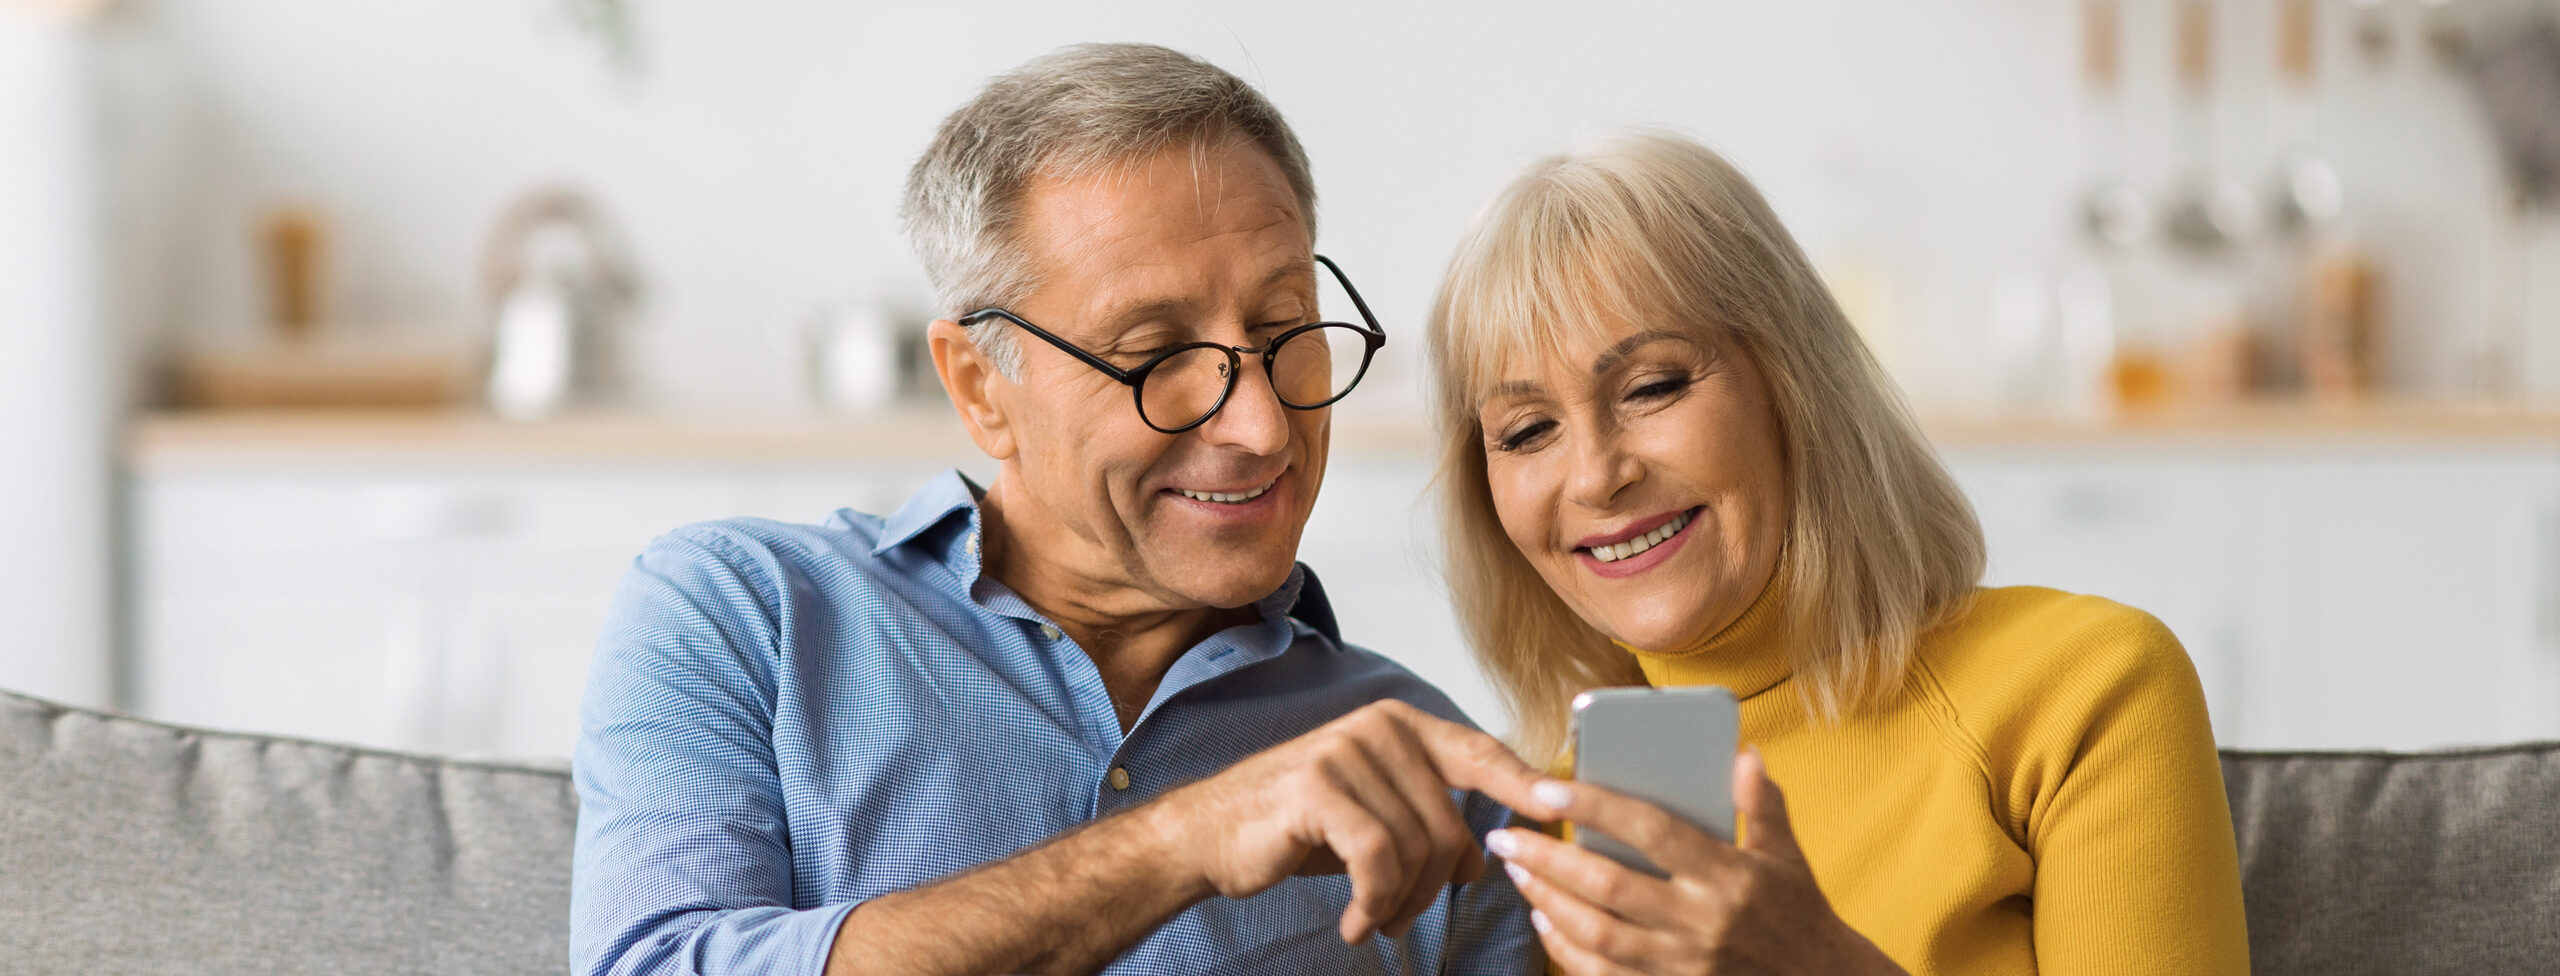 Älteres Ehepaar mit Smartphone